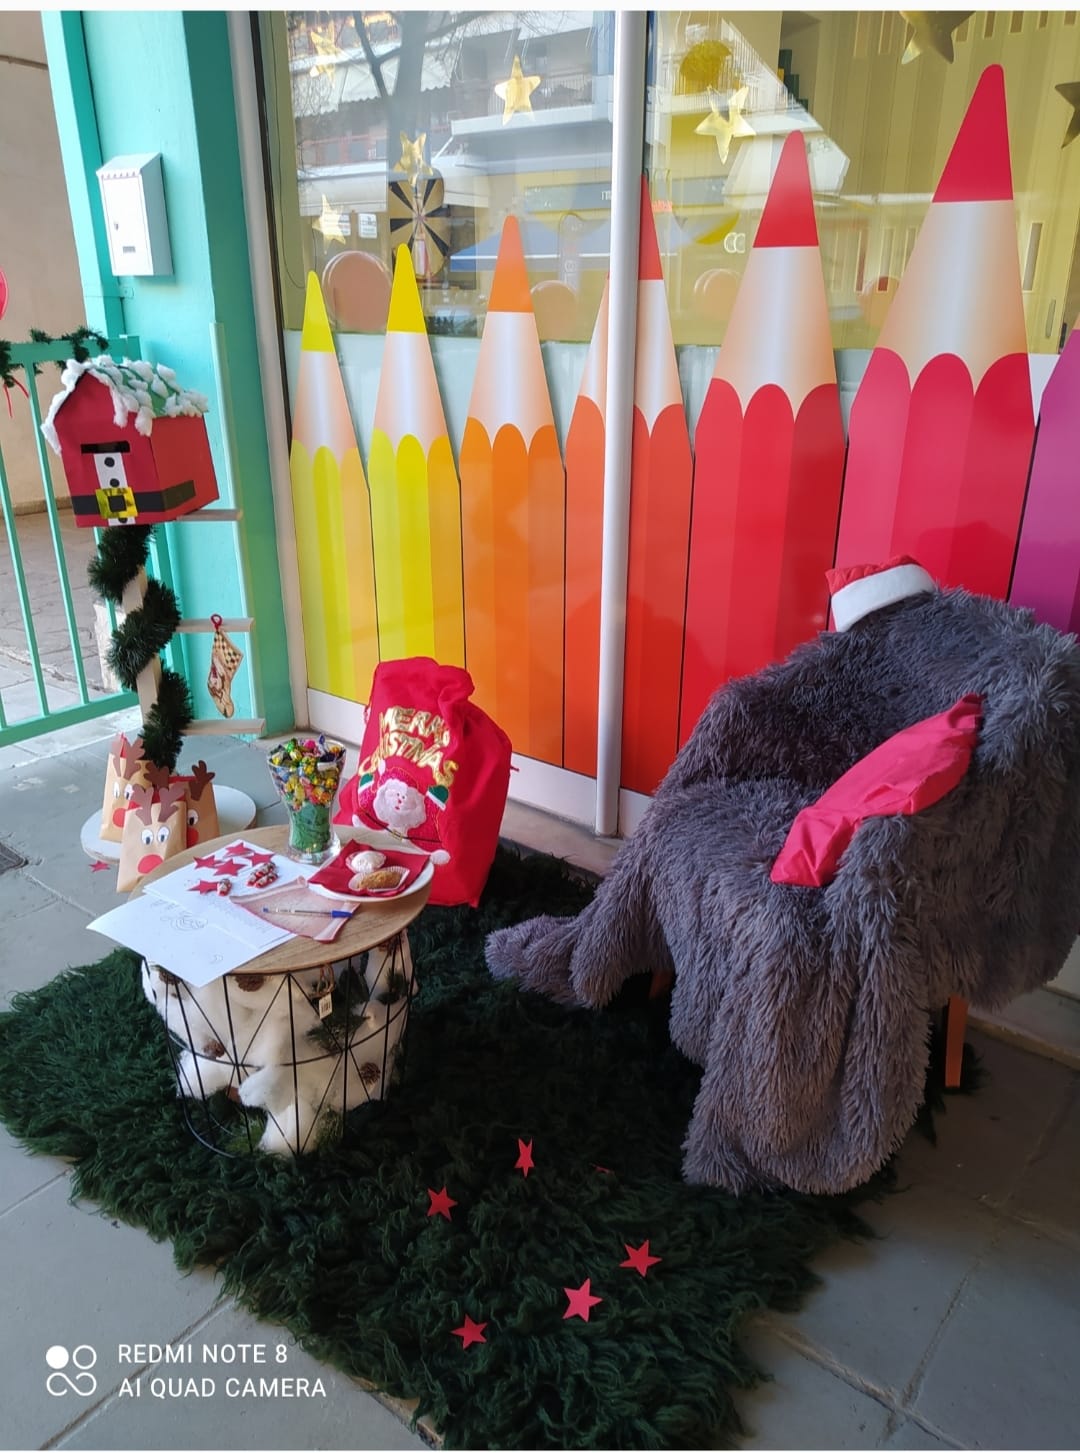 Ιδιωτικό Κέντρο Δημιουργικής Απασχόλησης ”Το Παιχνιδαγωγείο των Νάνων”: 33 μέρες για τα Χριστούγεννα και τα ξωτικά του ΚΔΑΠ ετοιμάζουν τα καλύτερα για τα παιδιά, ακόμα κ τις μέρες που τα σχολεία θα είναι κλειστά!